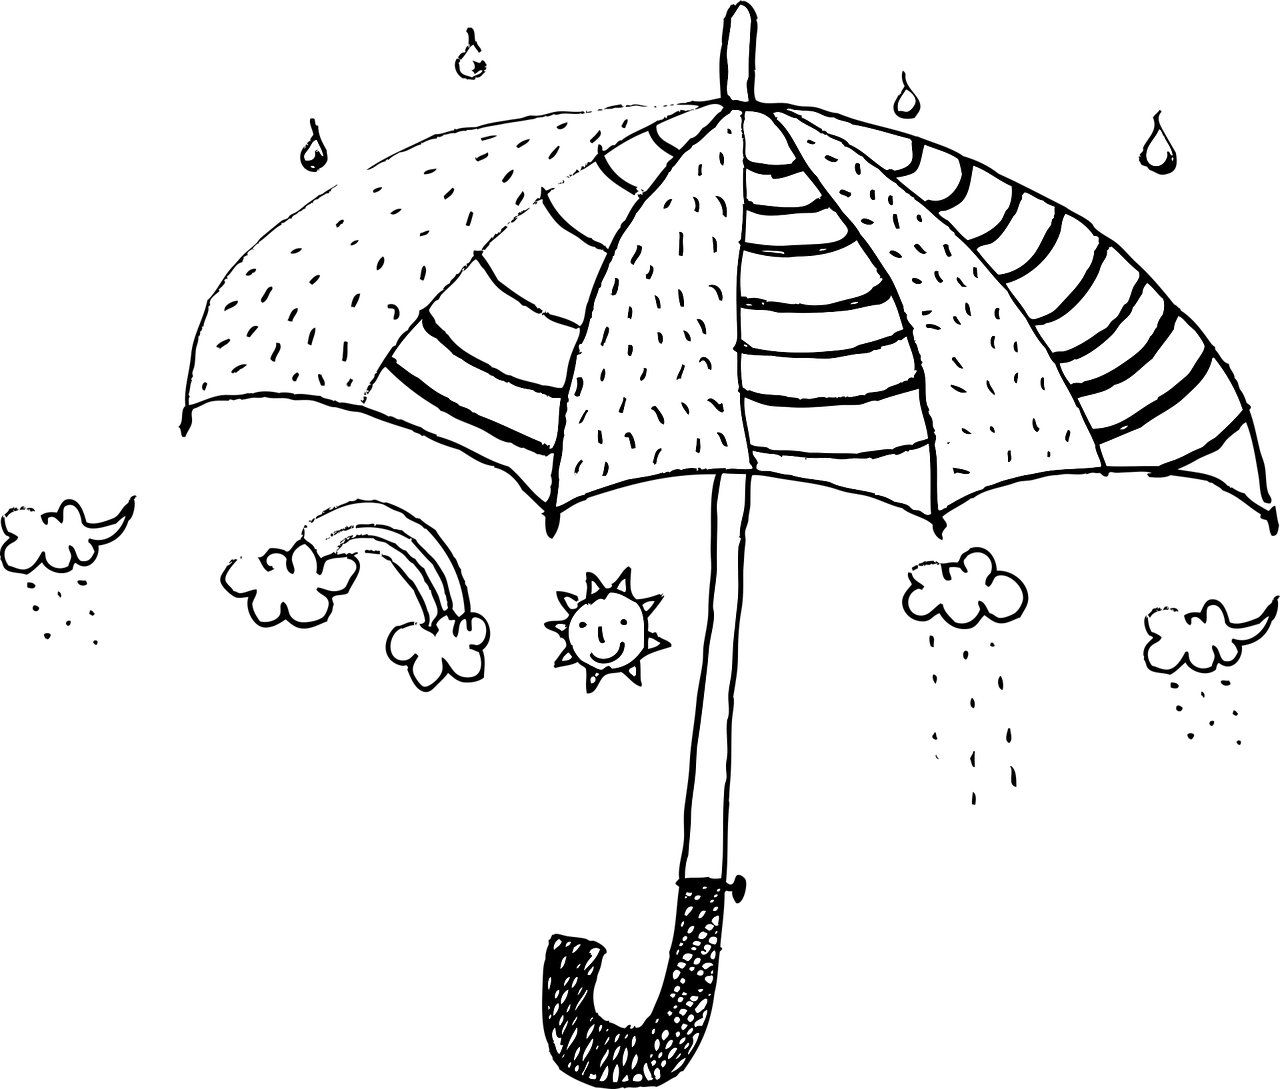 Panda with an umbrella